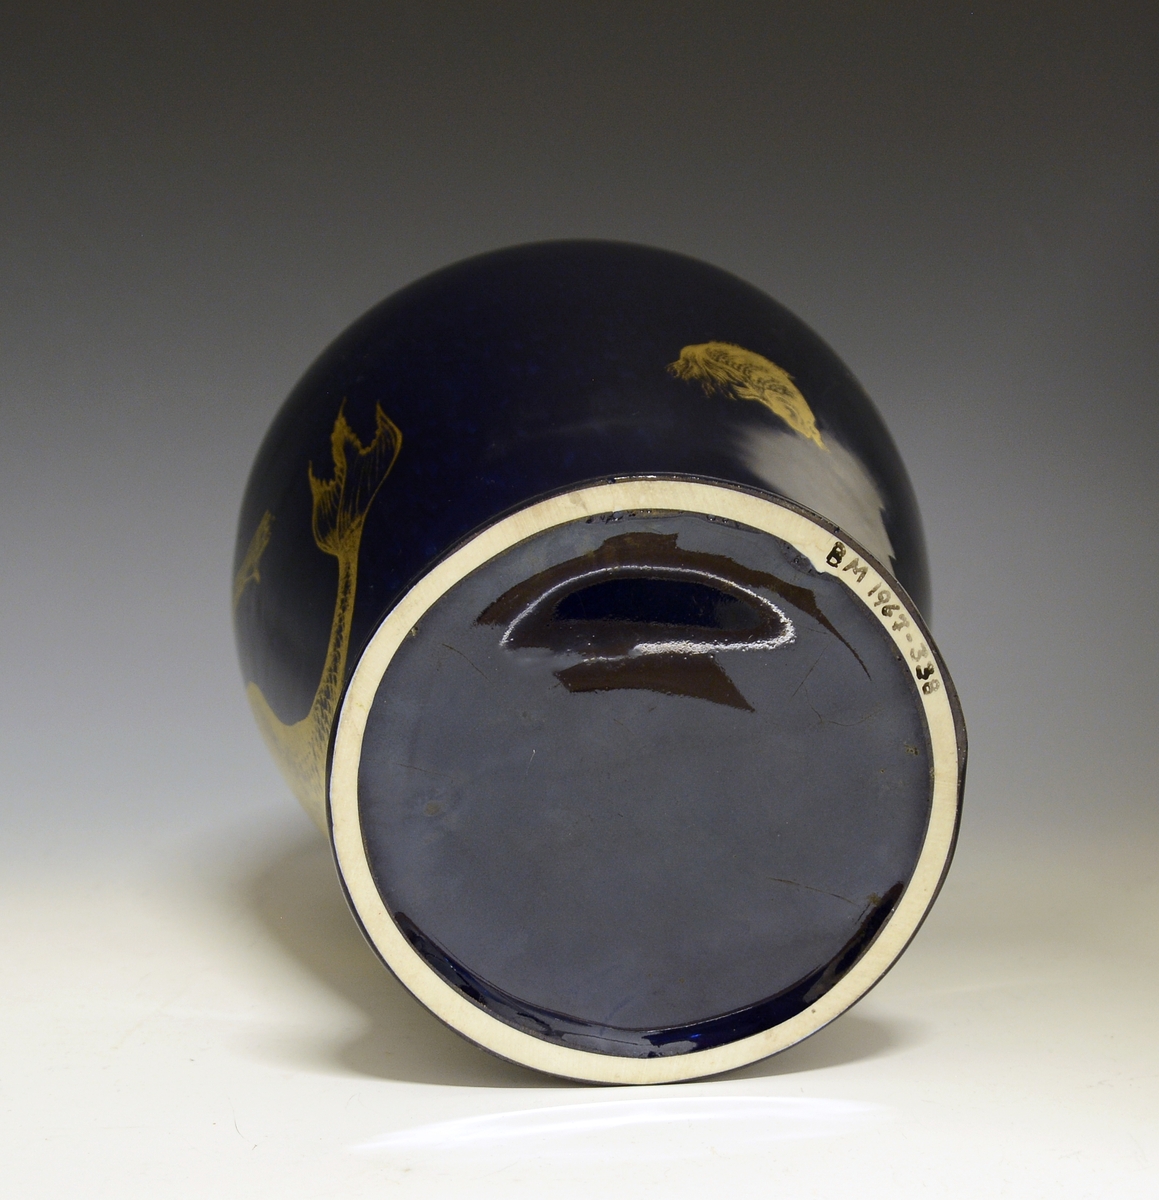 Prot: Stor vase av porselen. Dyp blå glasur. Dekor i gull: havfrue og fisk. Uten mrk. og sign. Form: Konrad Galaaen, dekor: Andor Hubay. Produsert 1954.